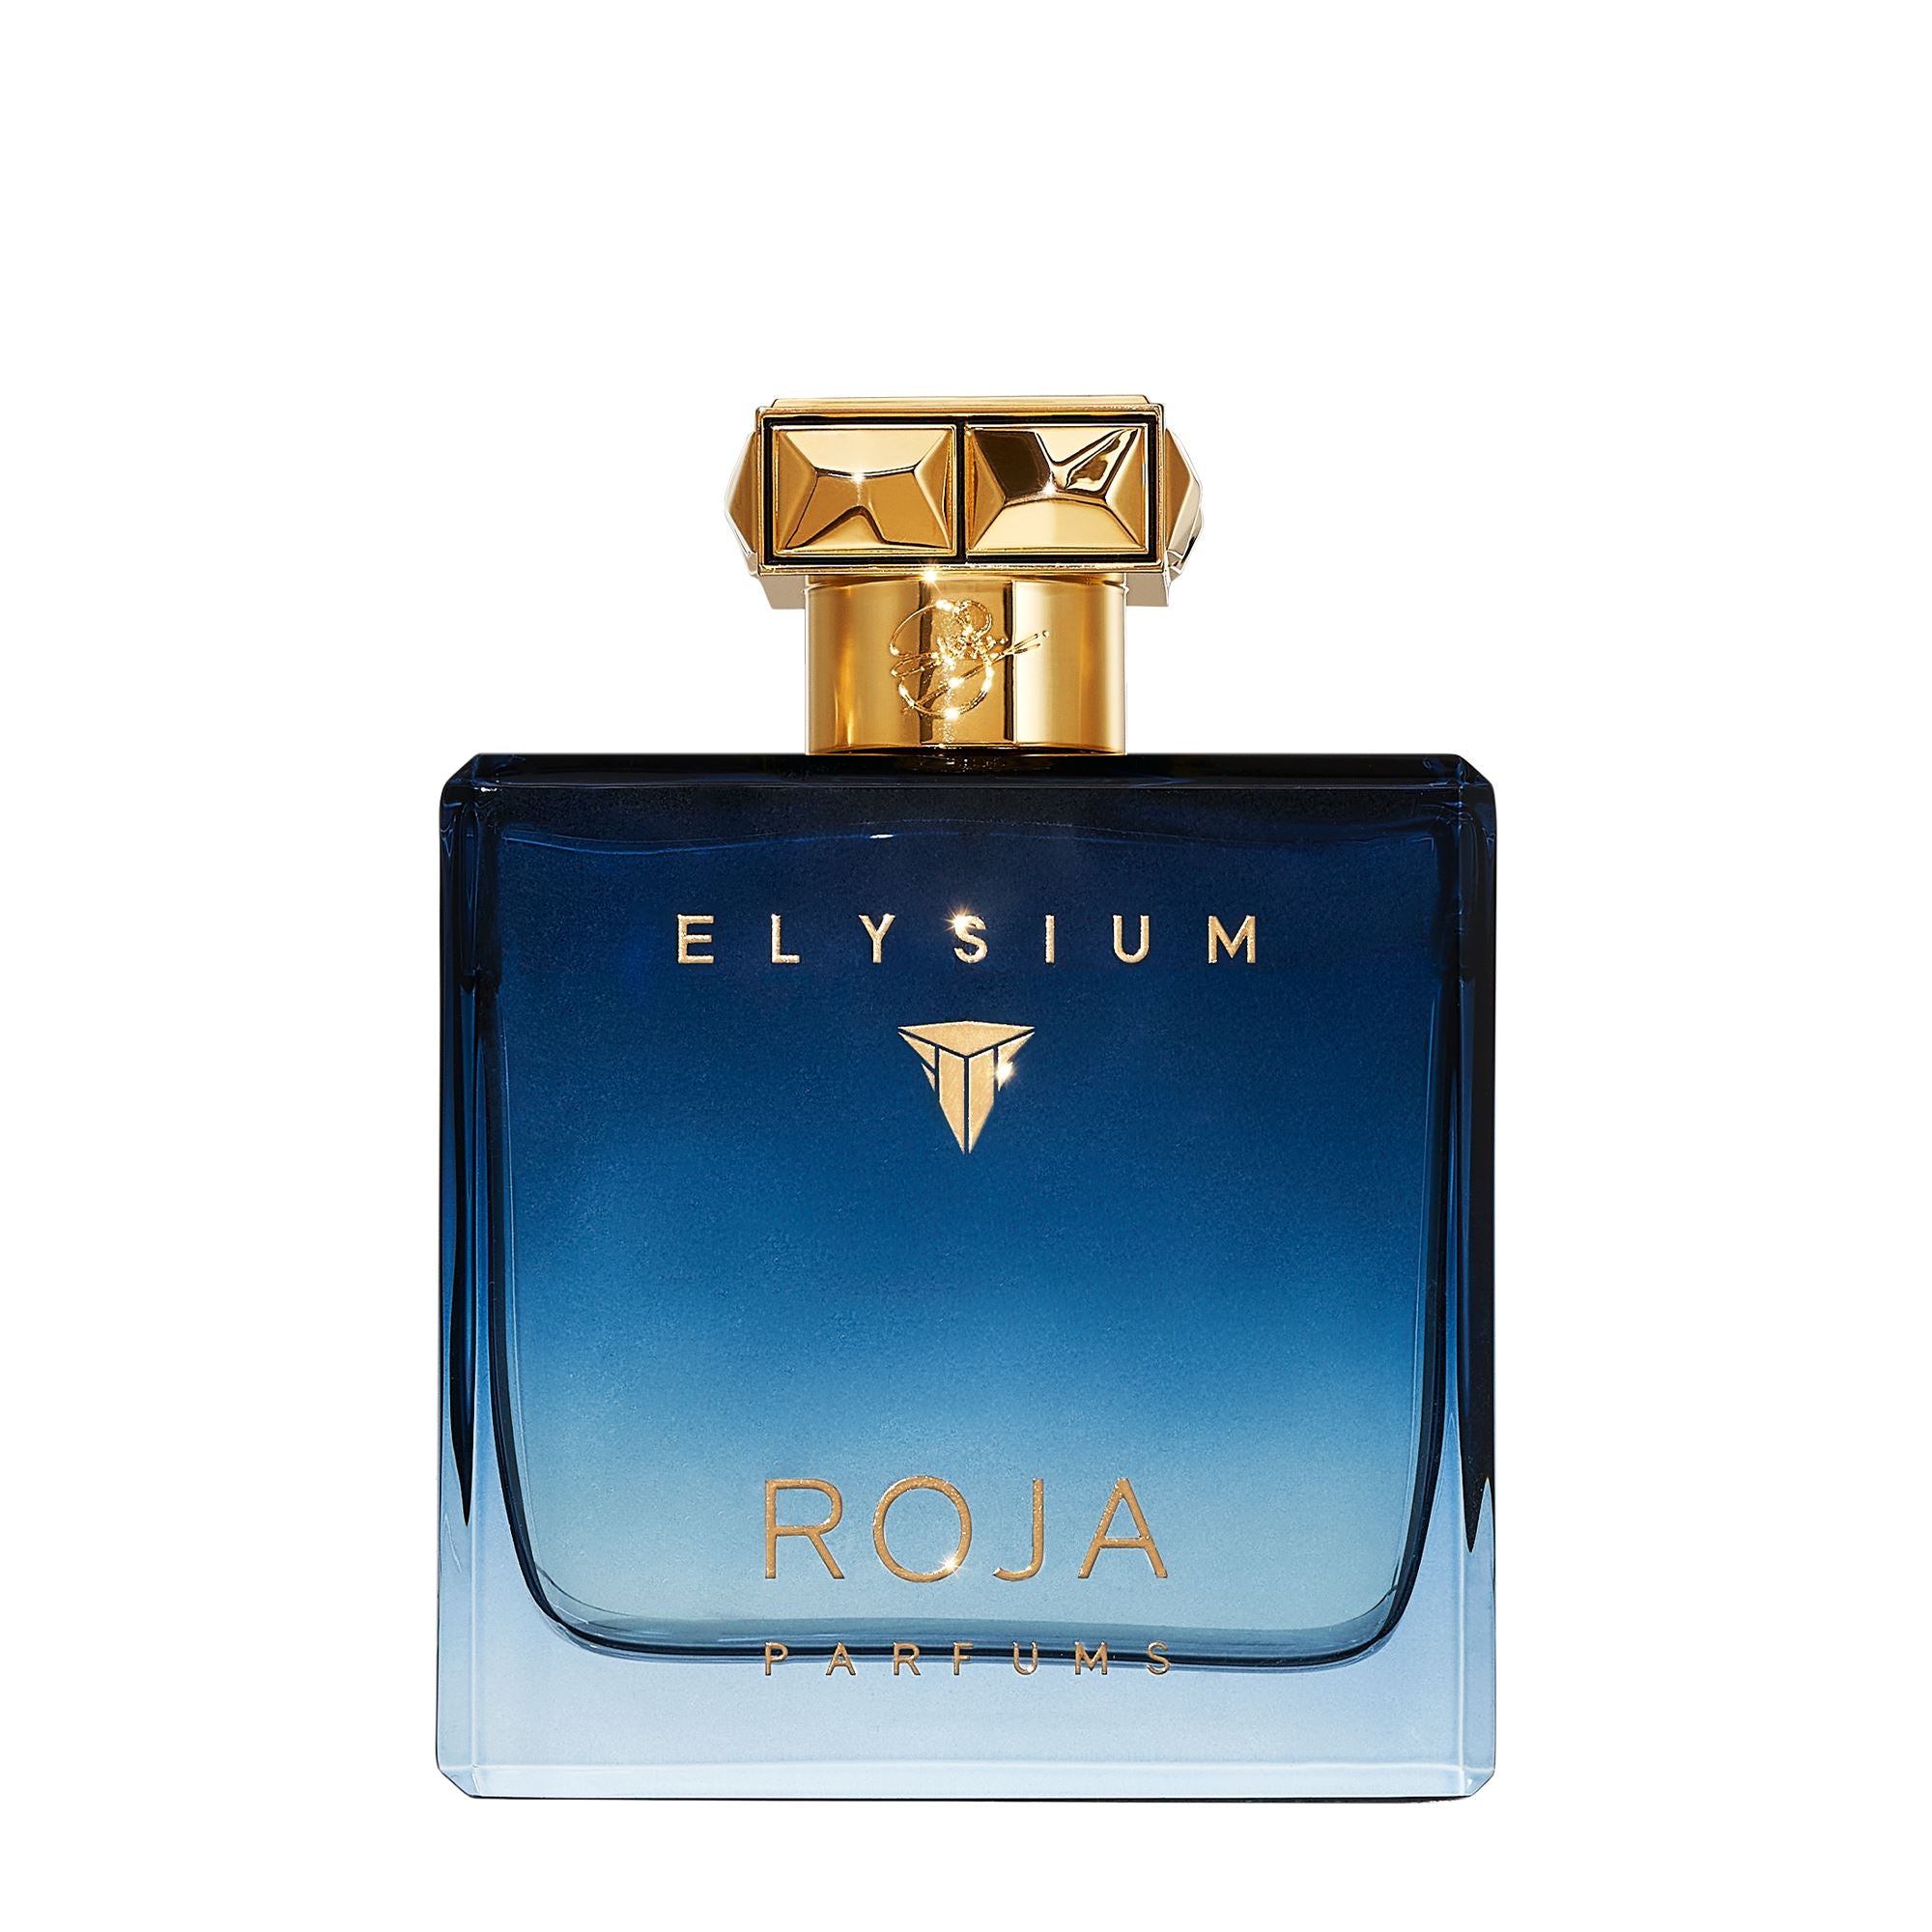 Elysium Pour Homme | Citrus Cologne for Men - Roja Parfums